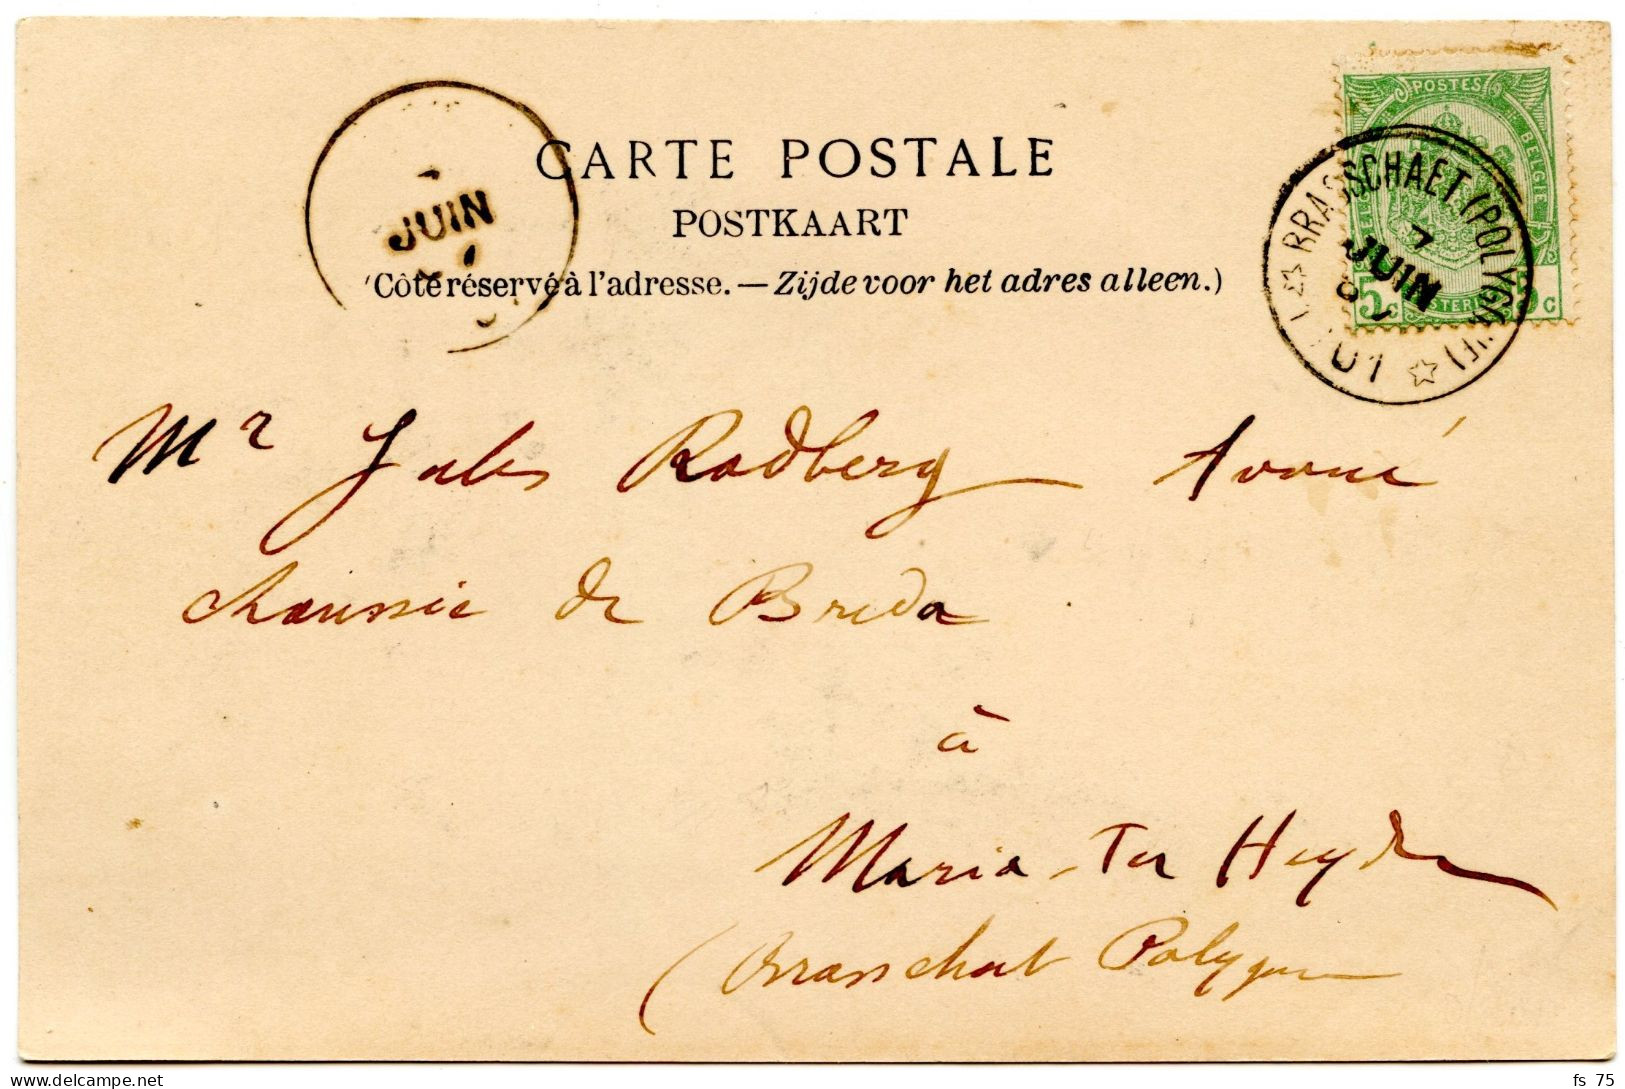 BELGIQUE - COB 56 SIMPLE CERCLE RELAIS A ETOILES BRASSCHAET SUR CARTE POSTALE, 1901 - Postmarks With Stars